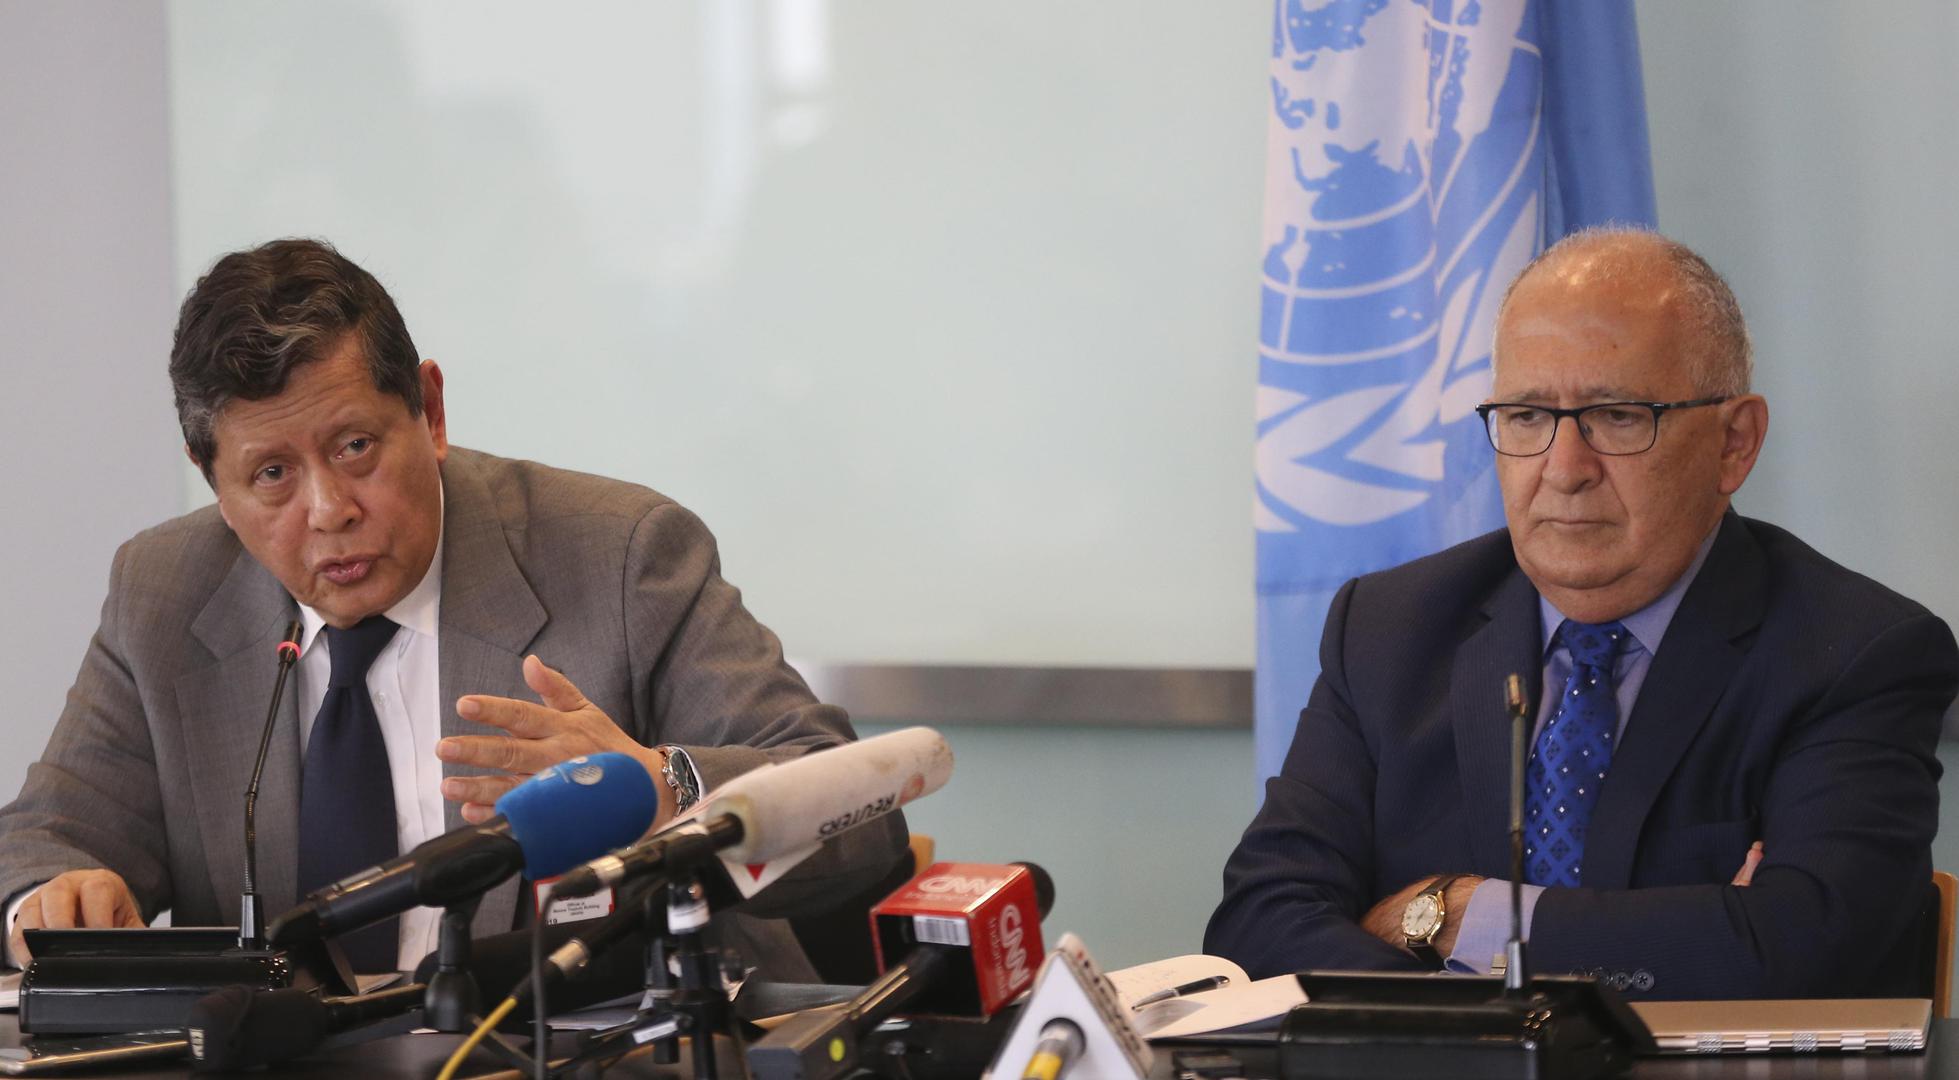 联合国缅甸实况调查团主席达鲁斯曼及成员西多蒂在新闻发布会上发言，2019年8月5日摄于印尼雅加达。